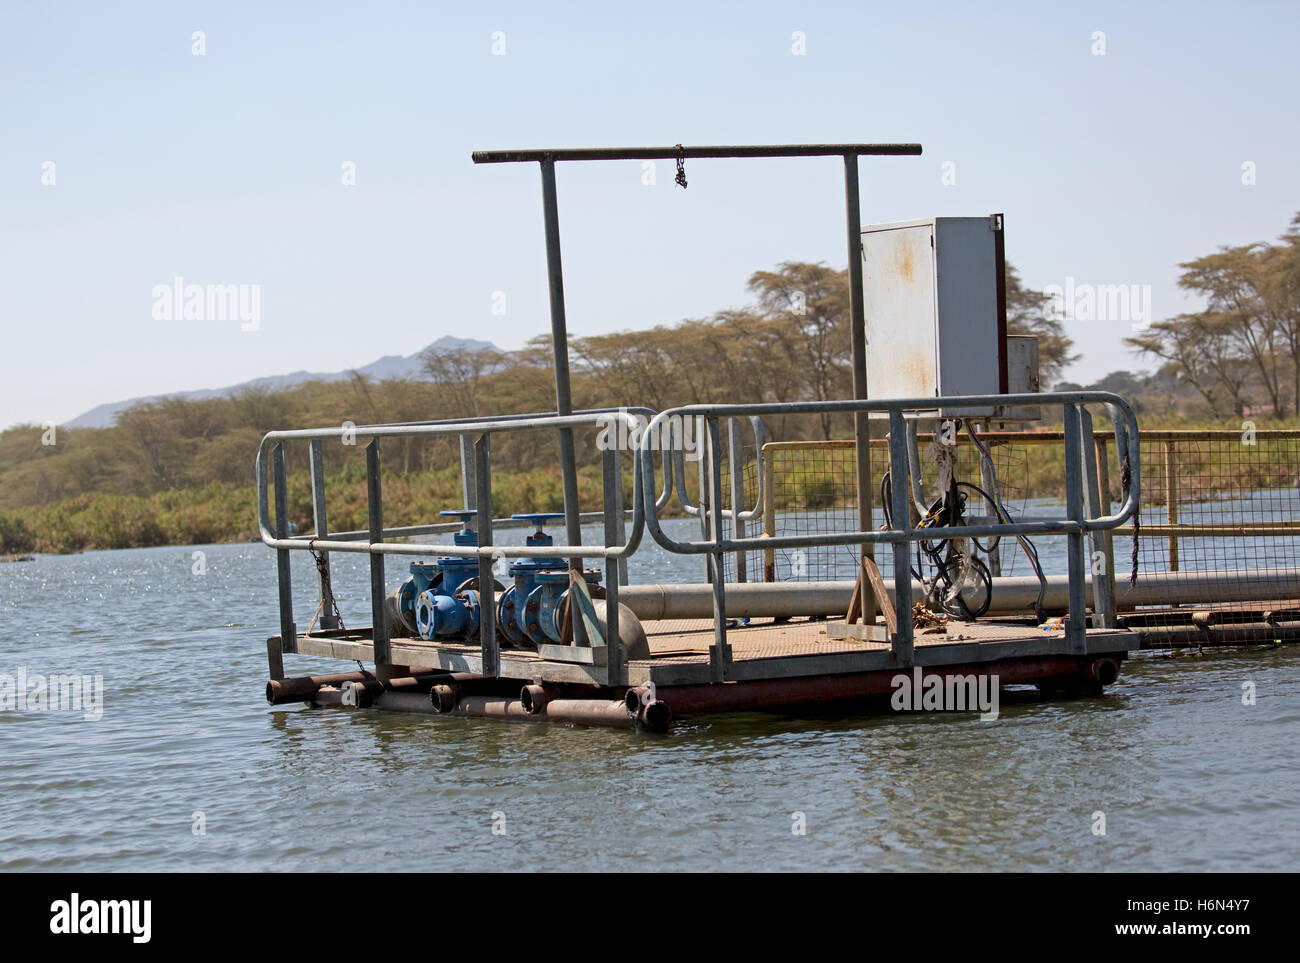 Pumps extracting water from Lake Naivasha Kenya Stock Photo